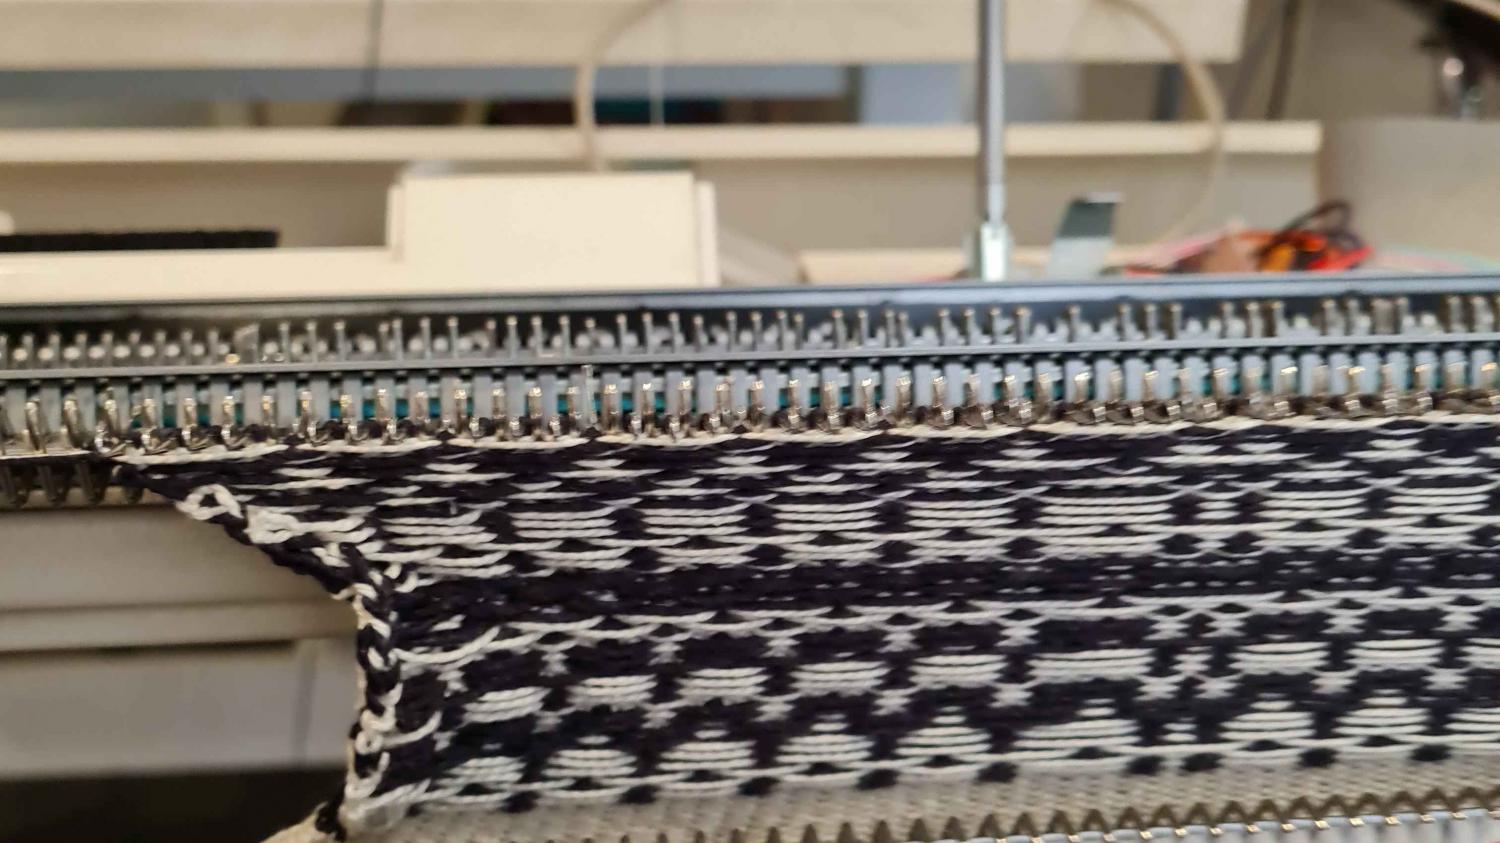 Knitting machine hack